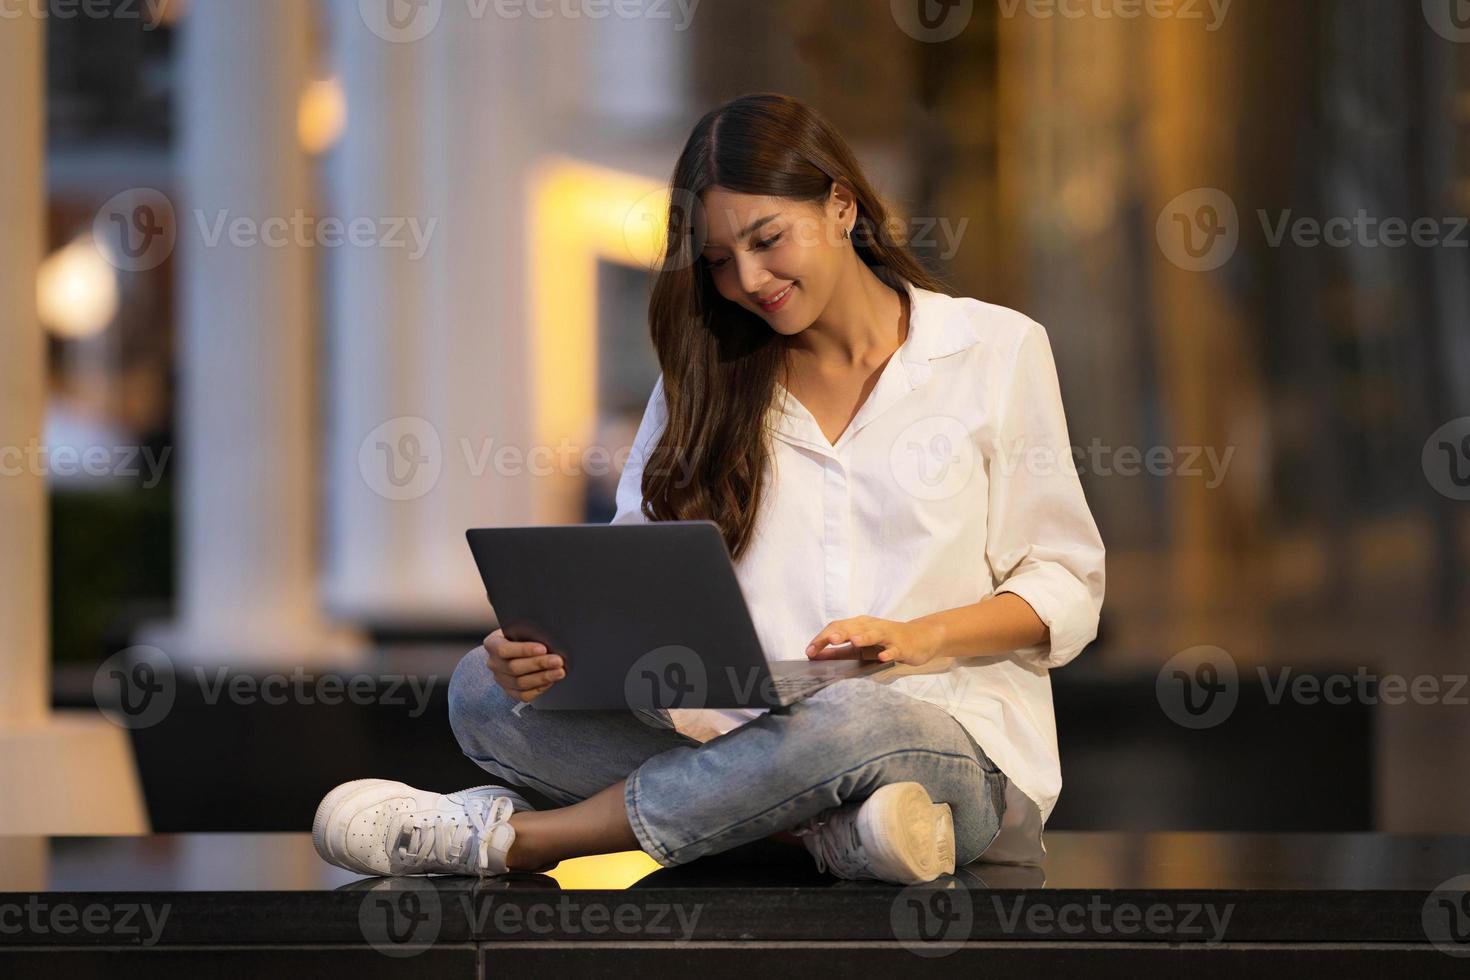 jeune femme asiatique avec un visage souriant utilisant un ordinateur portable dans une ville la nuit photo